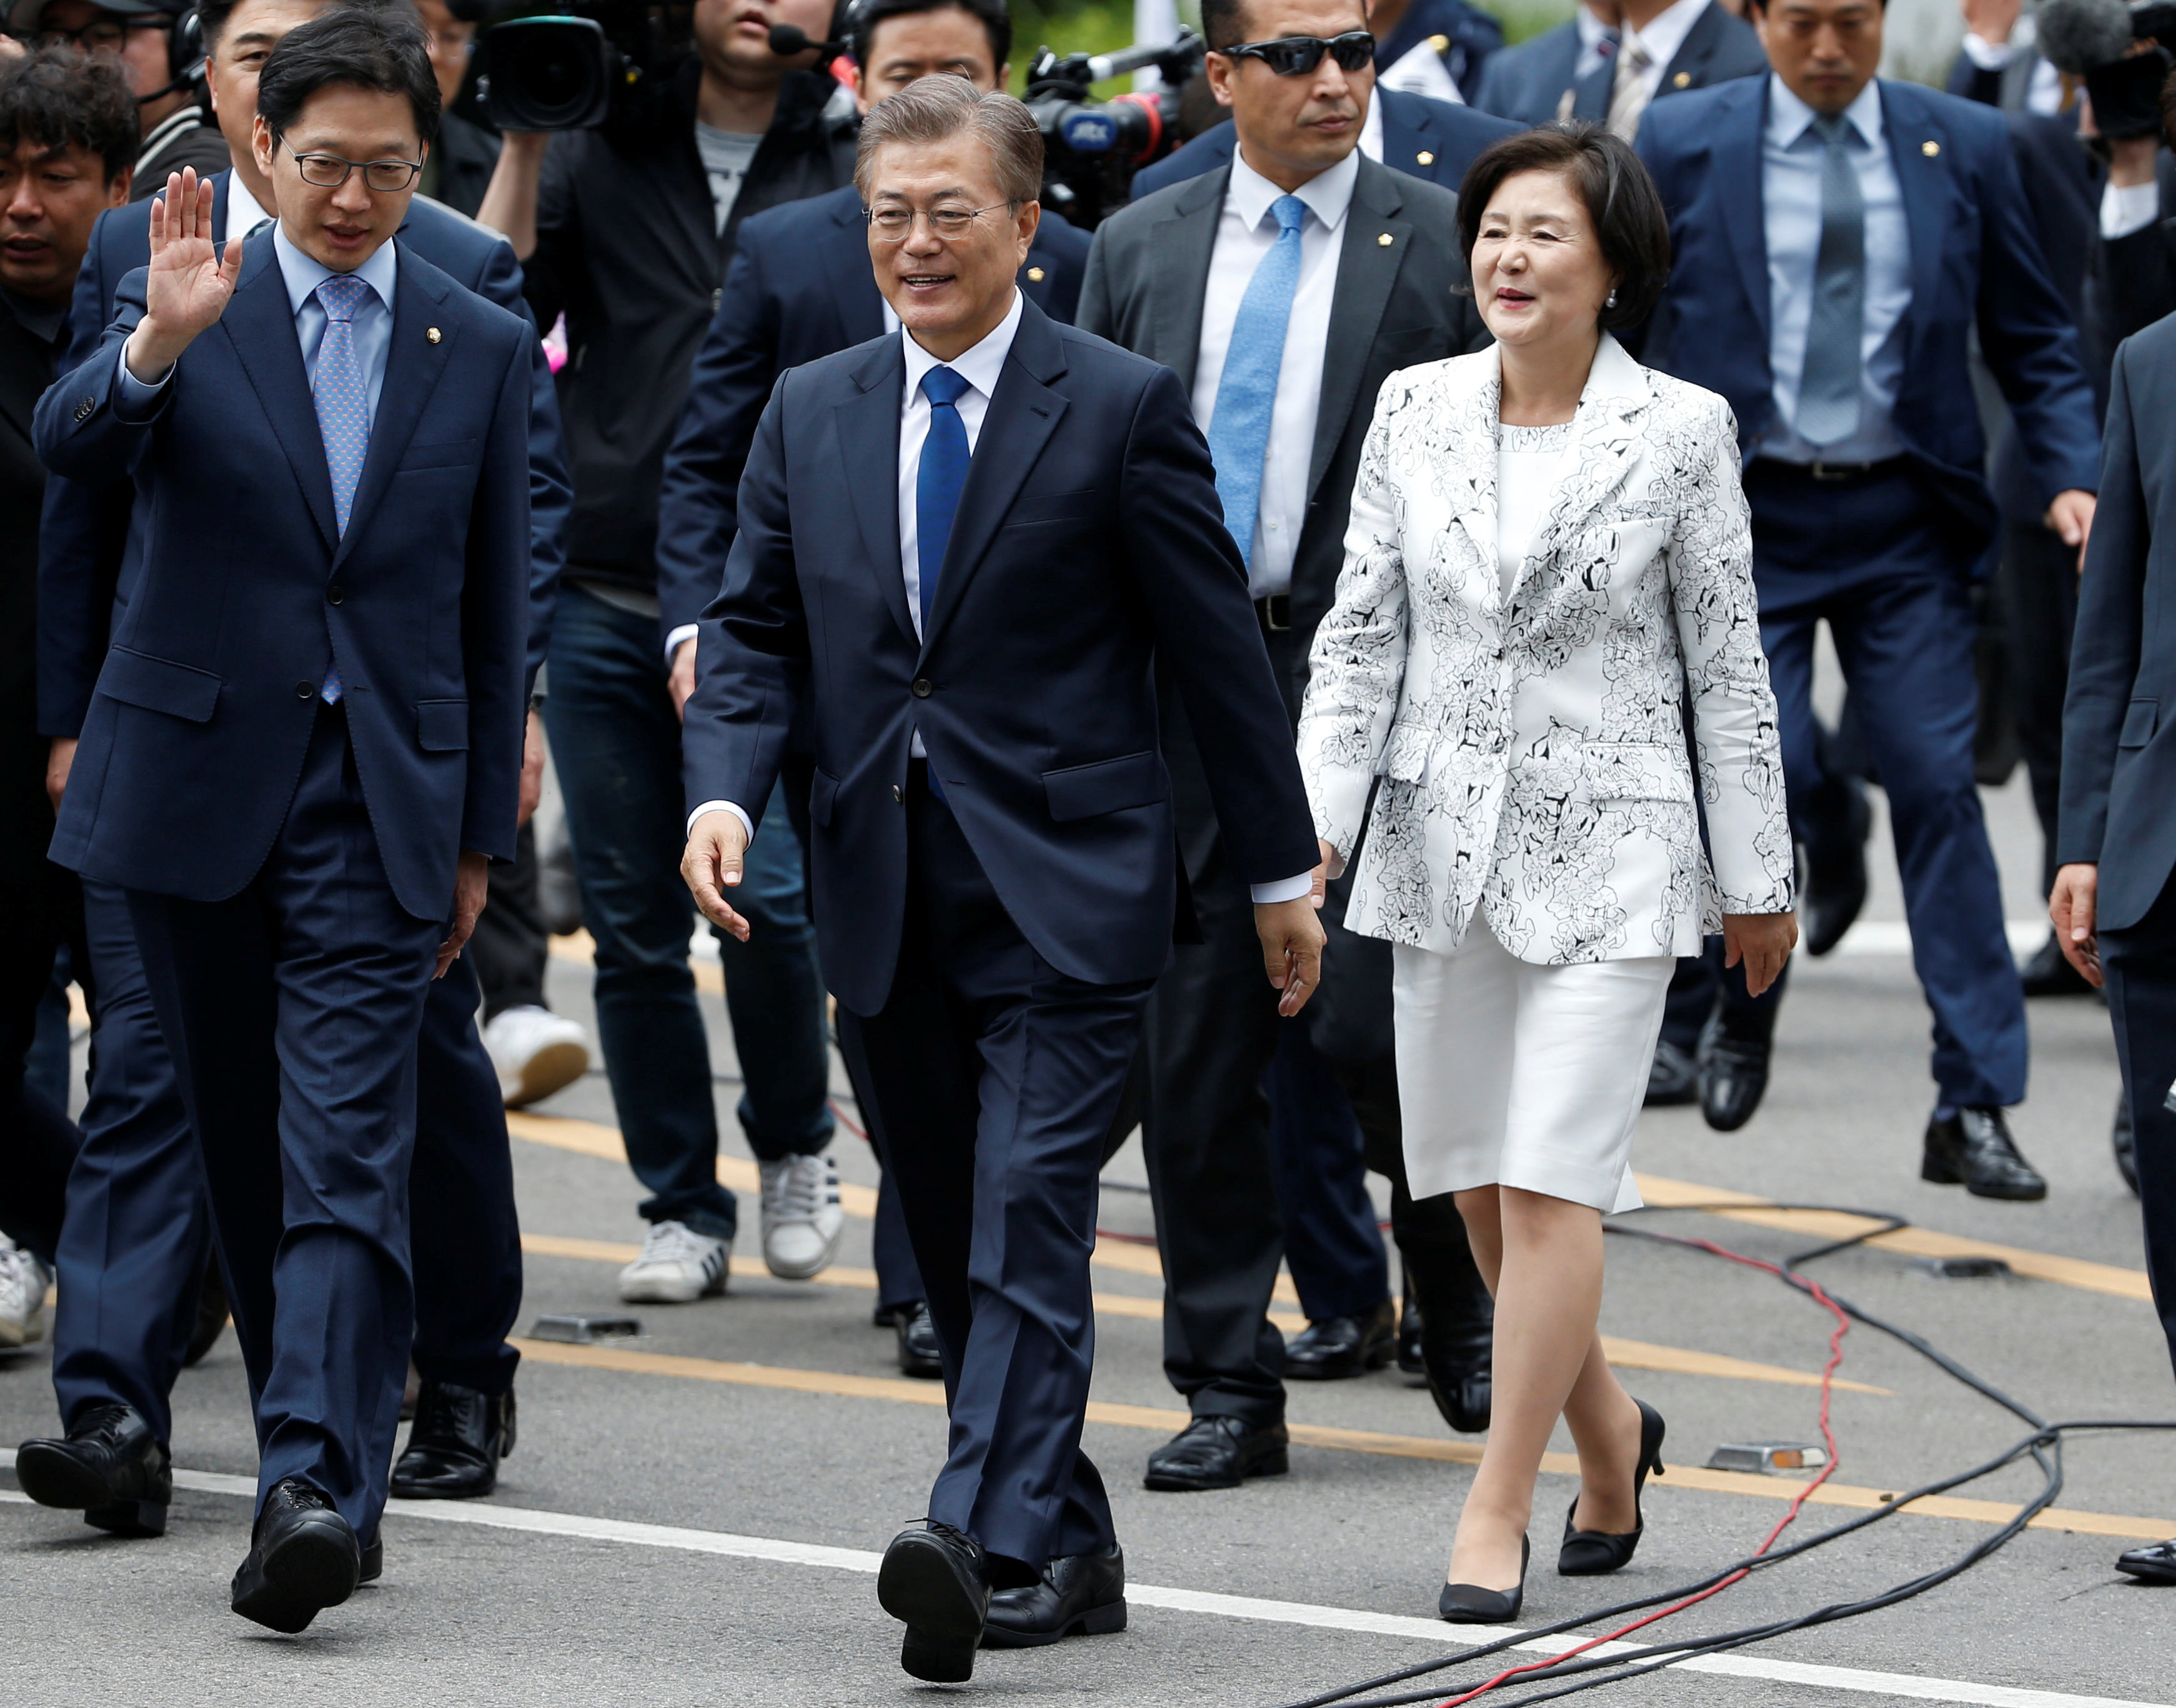 رئيس كوريا الجنوبية يتوجه للقاء نظيره الكوري الشمالي